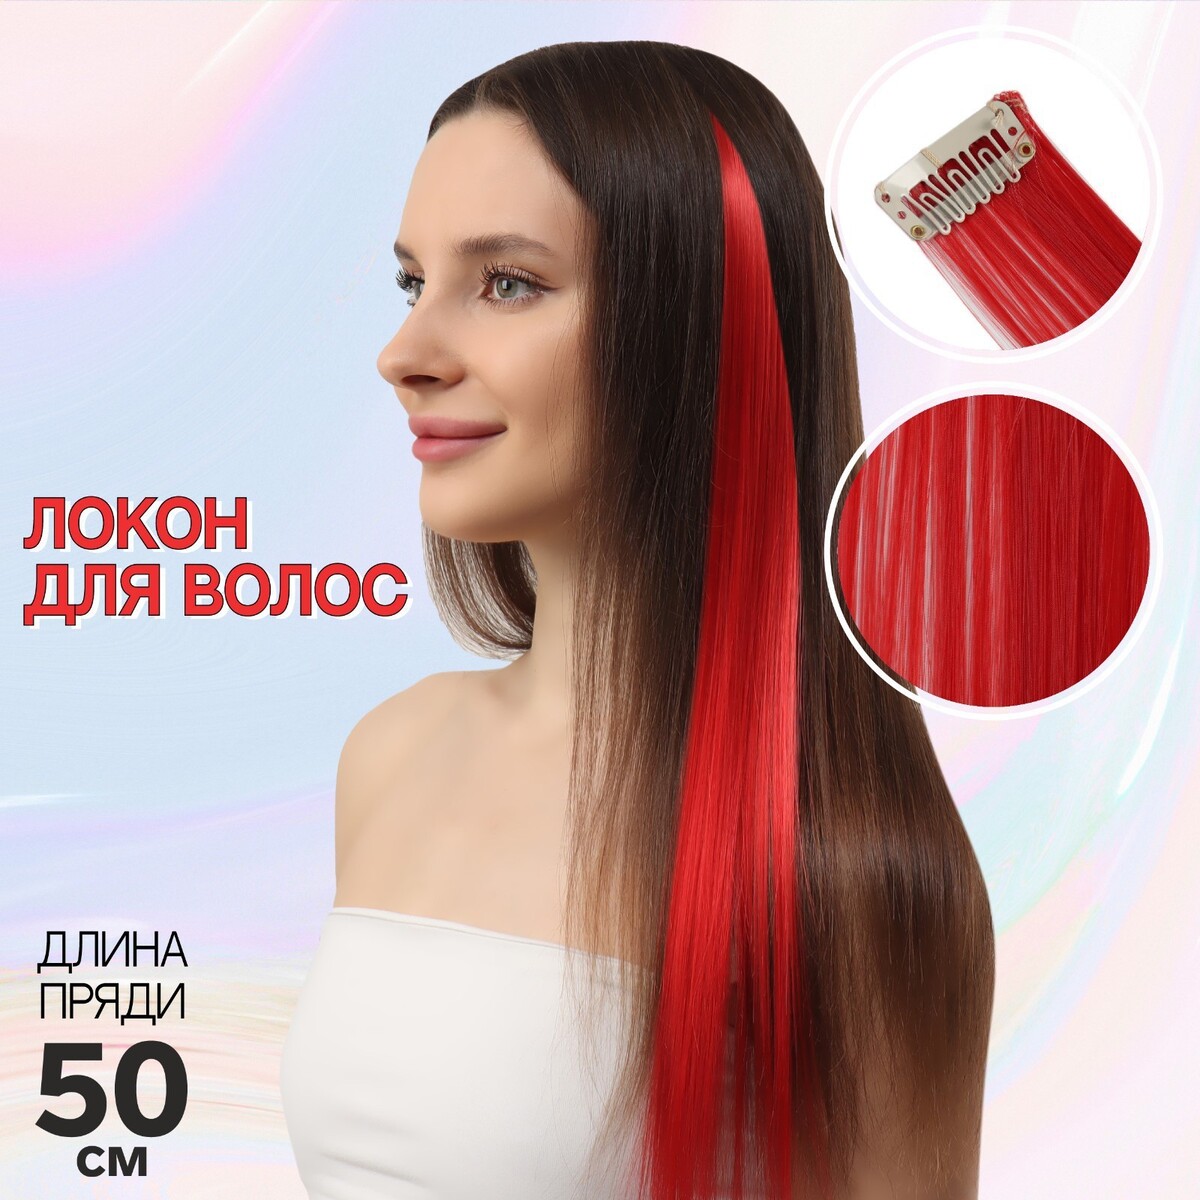 Локон накладной, прямой волос, на заколке, 50 см, 5 гр, цвет красный локон накладной прямой волос на заколке 50 см 5 гр бирюзовый